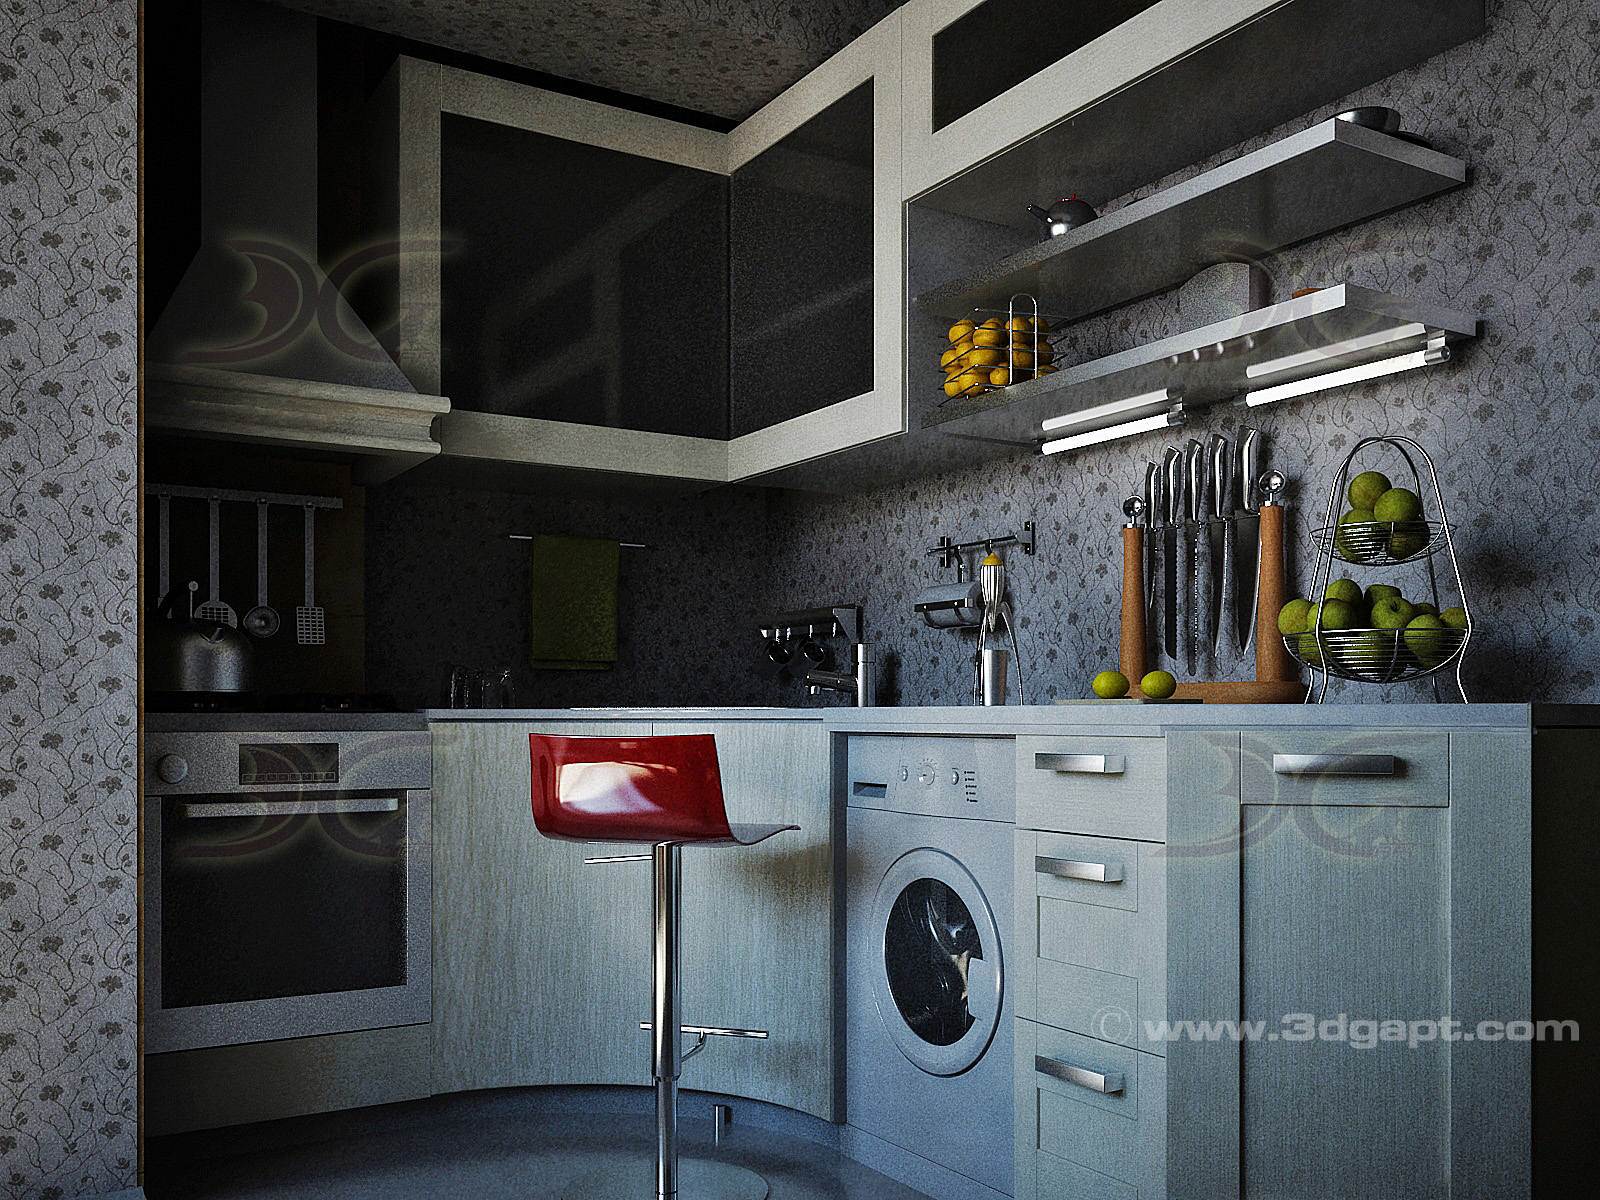 architecture interior kitchen-3versions 39